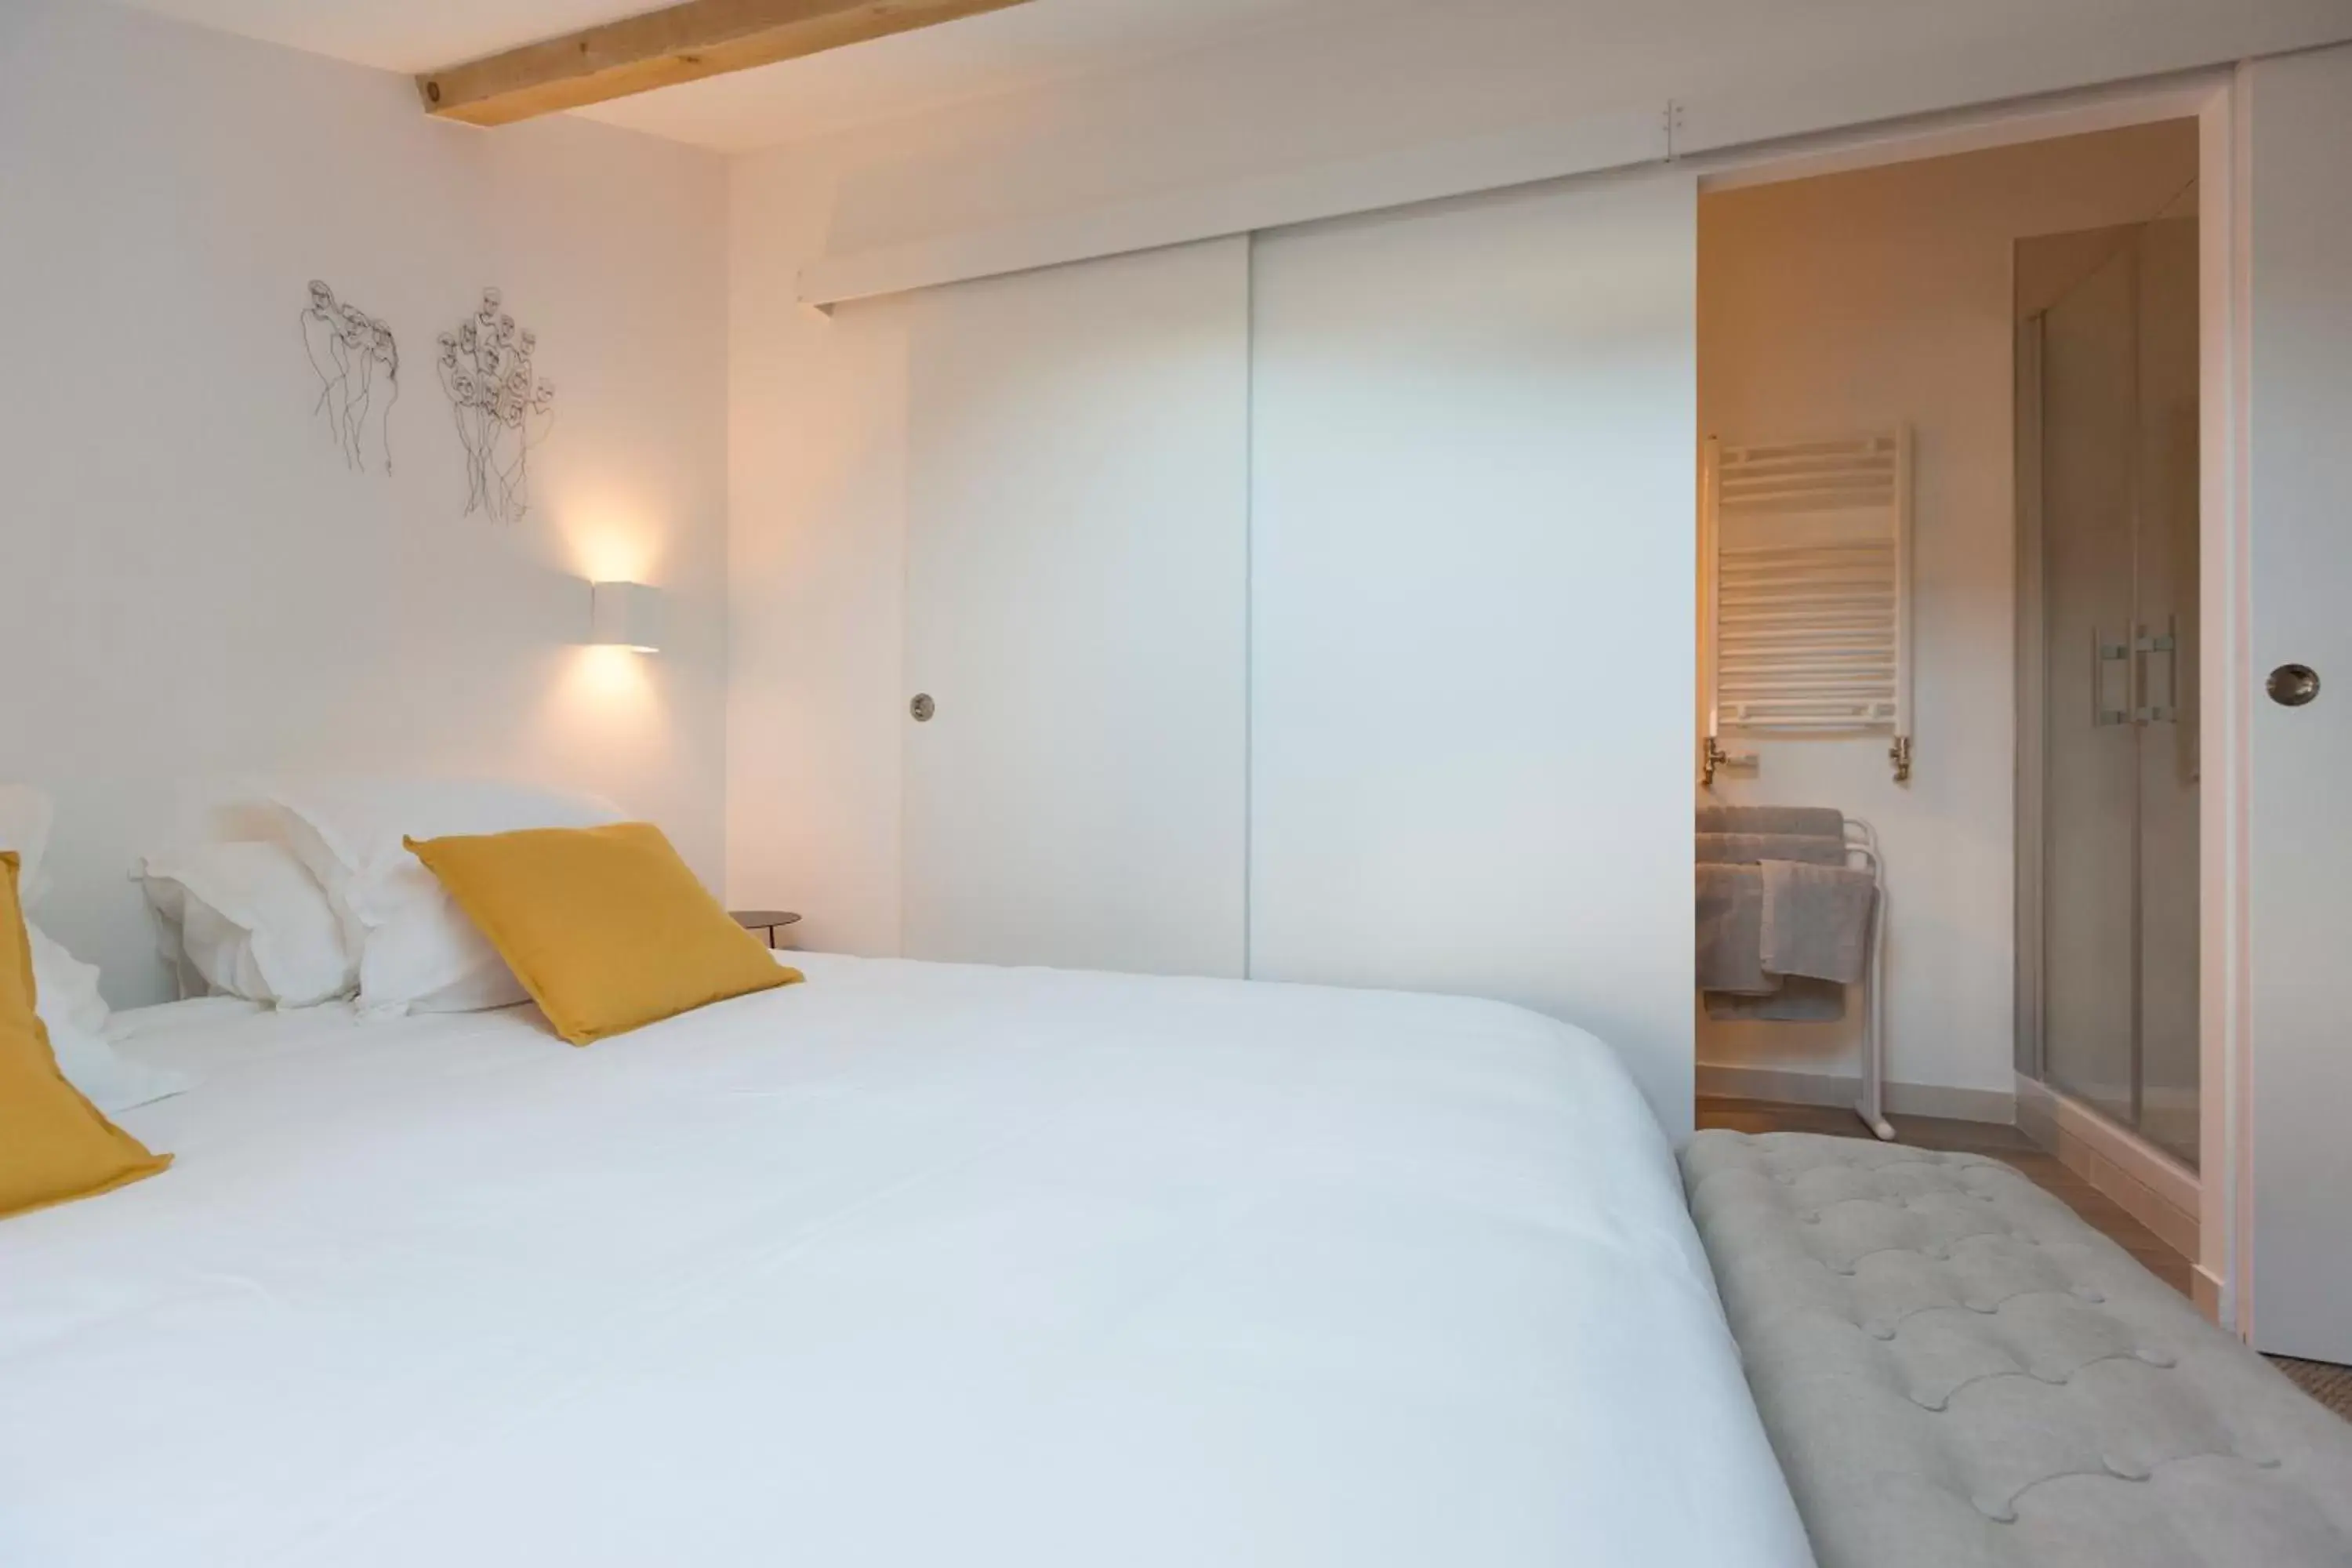 Bedroom, Room Photo in Clos Saint Jacques - Maison d'Hôtes